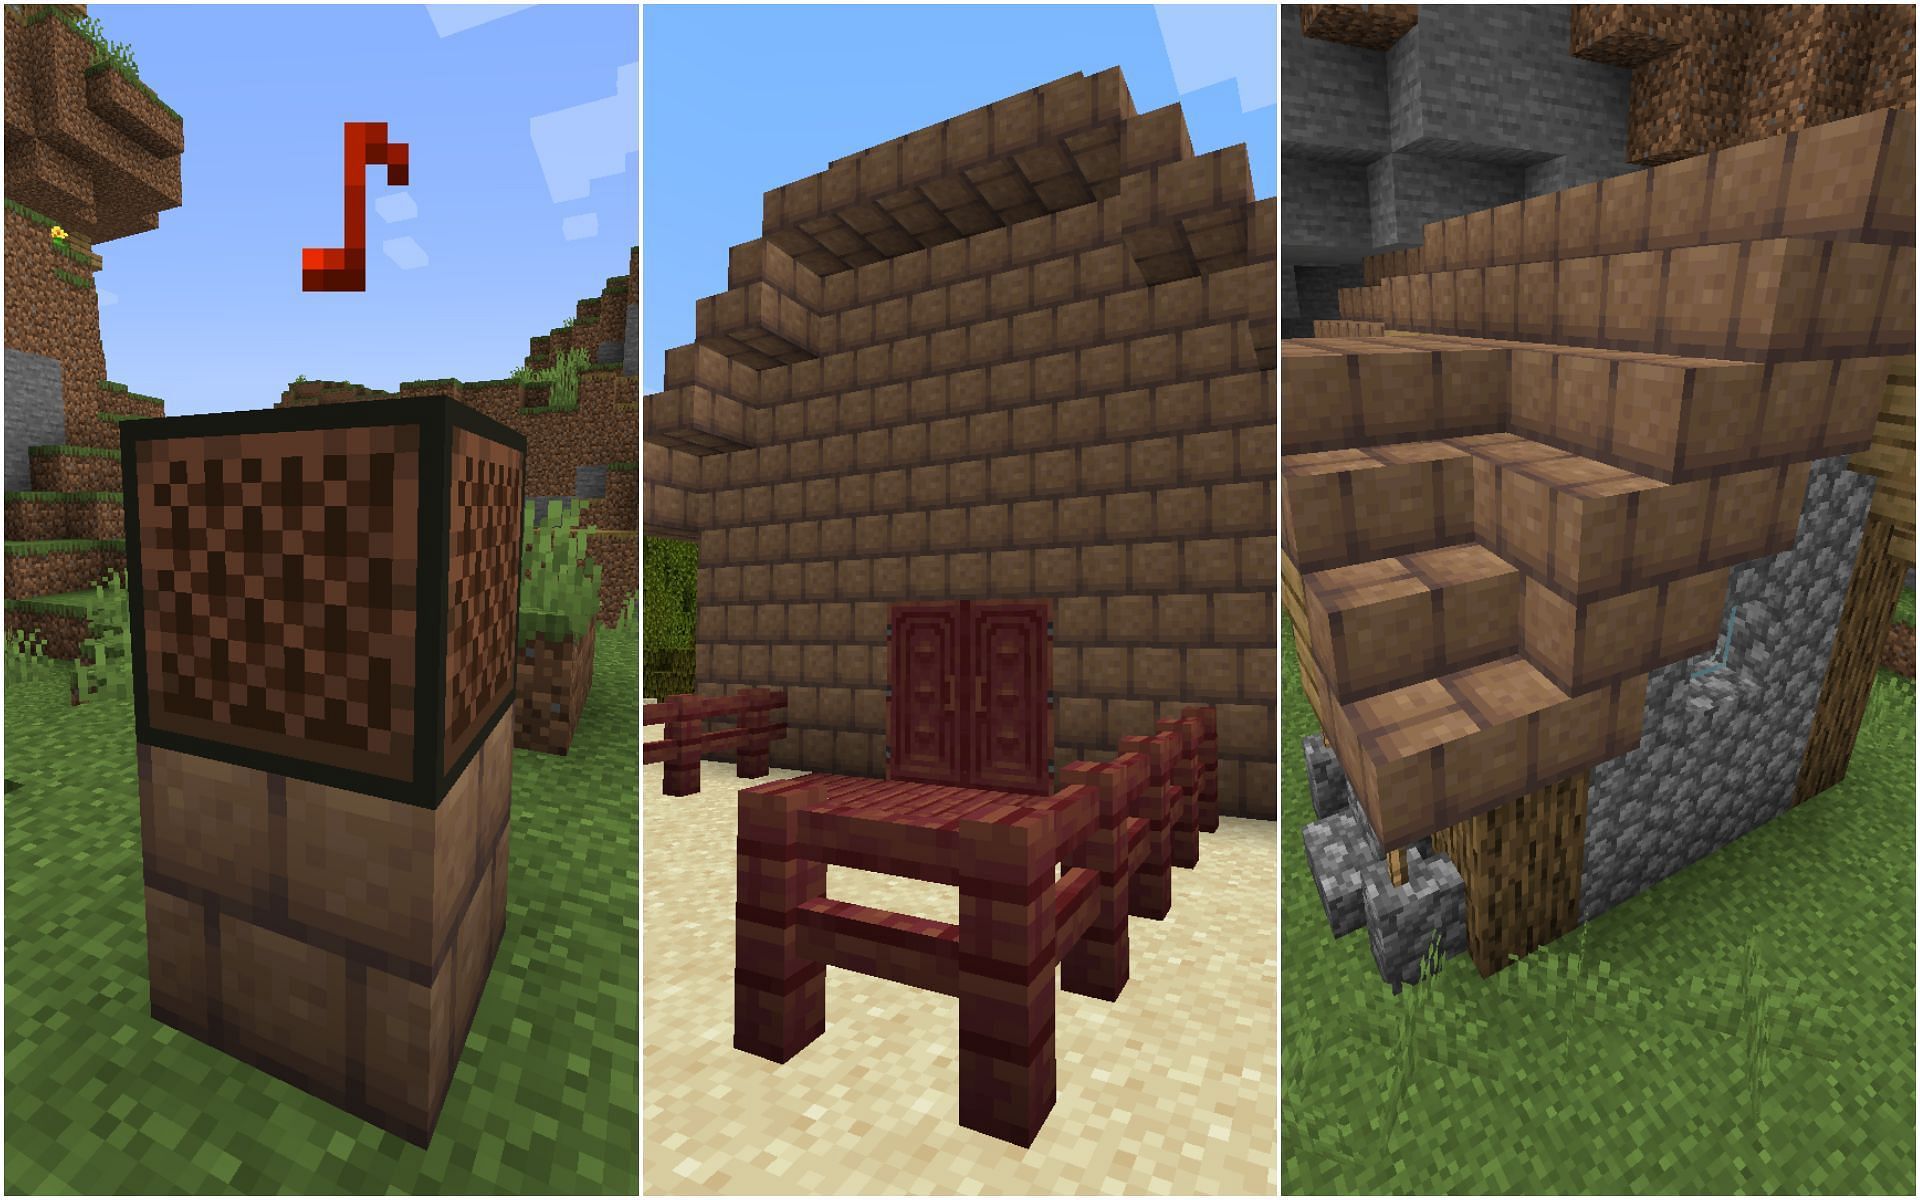 Uses of mud bricks (Image via Minecraft 1.19 update)